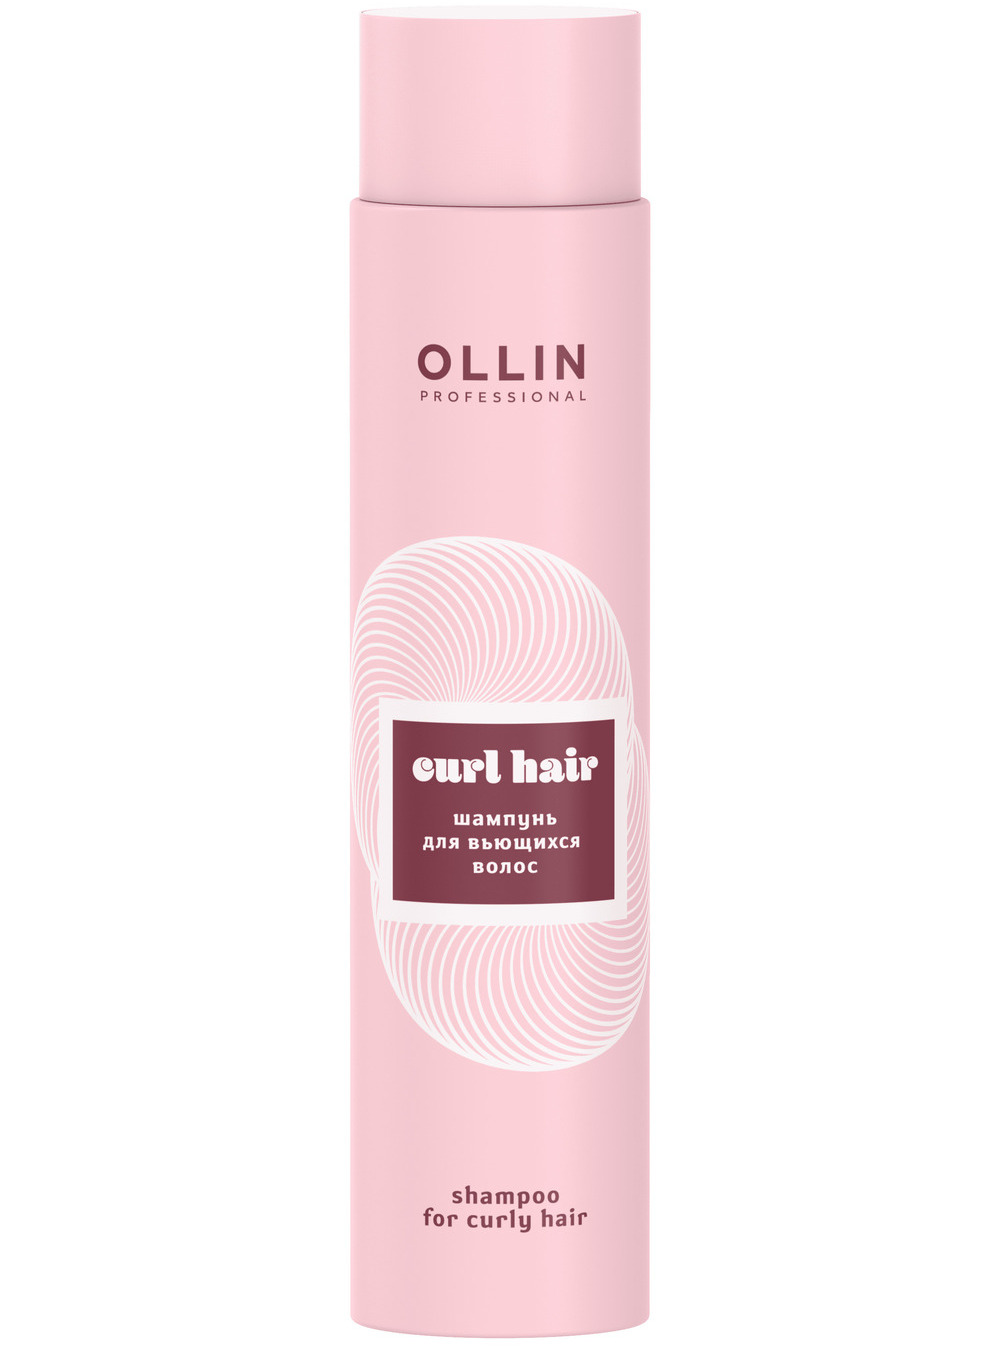 Ollin Professional Шампунь для вьющихся волос, 300 мл (Ollin Professional, Curl & Smooth Hair)